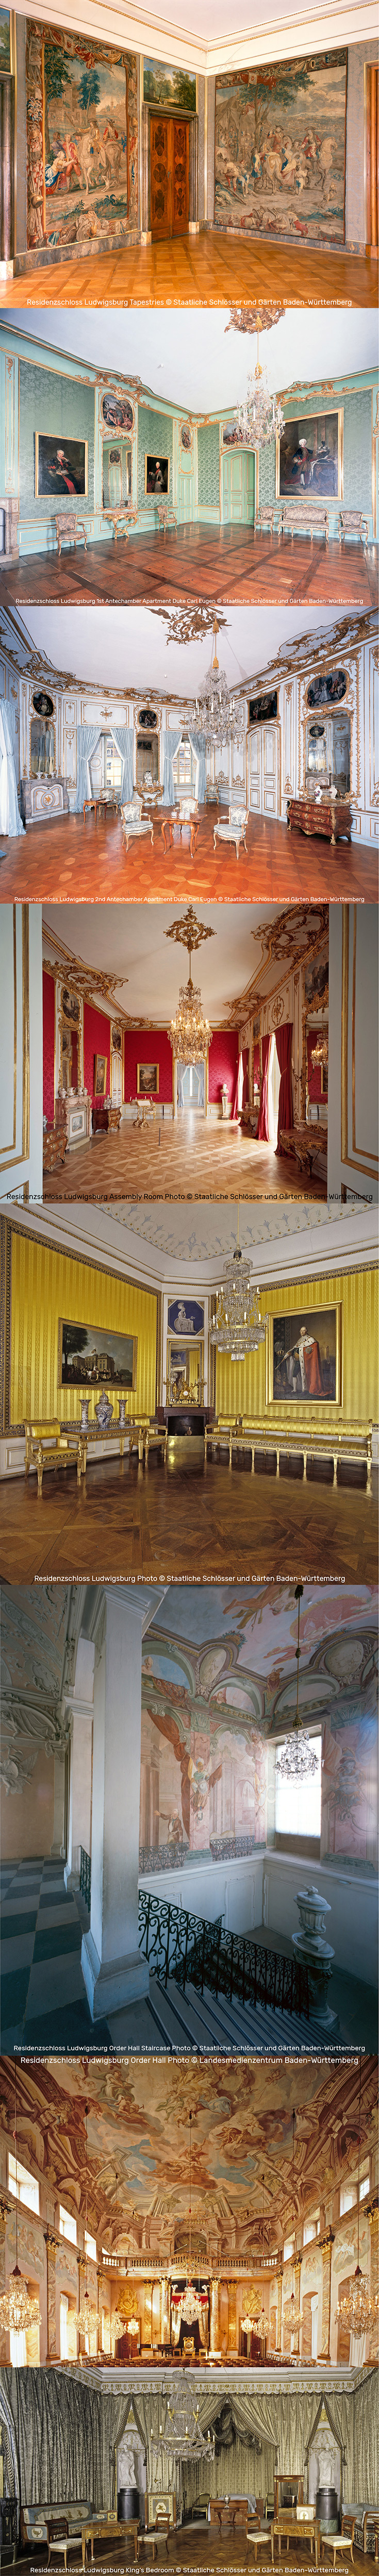  Baroque, Rococo, and Neoclassical Interiors in the Residenzschloss Ludwigsburg | Photos by Staatliche Schlösser und Gärten Baden-Württemberg & Landesmedienzentrum Baden-Württemberg